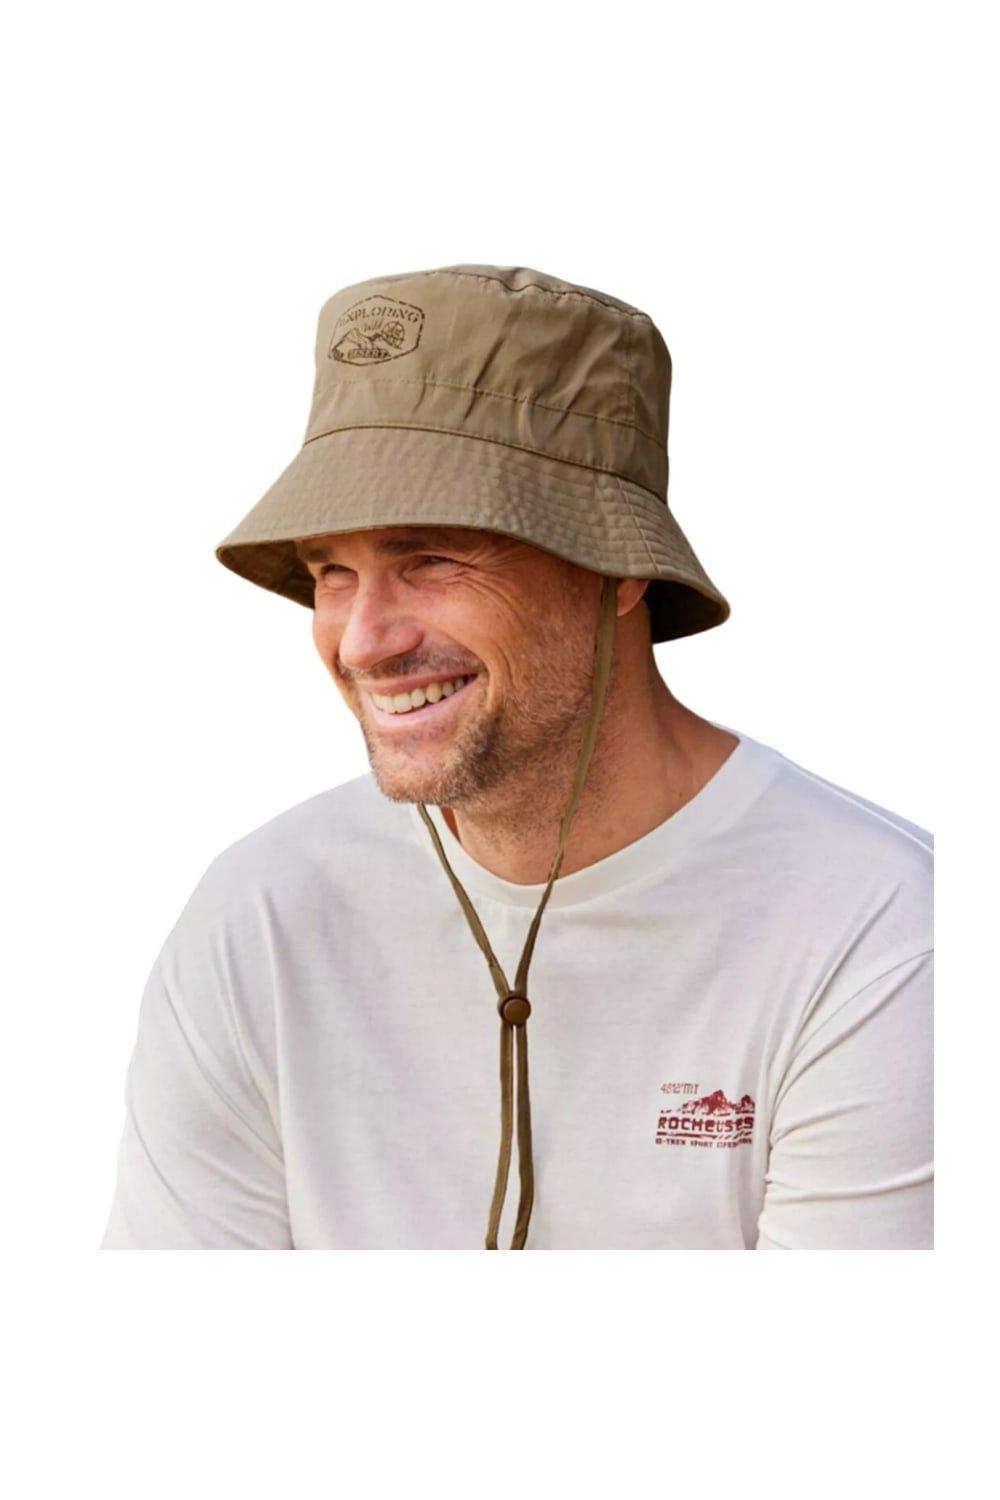 boohoo Men's Fabric Interest Denim Bucket Hat